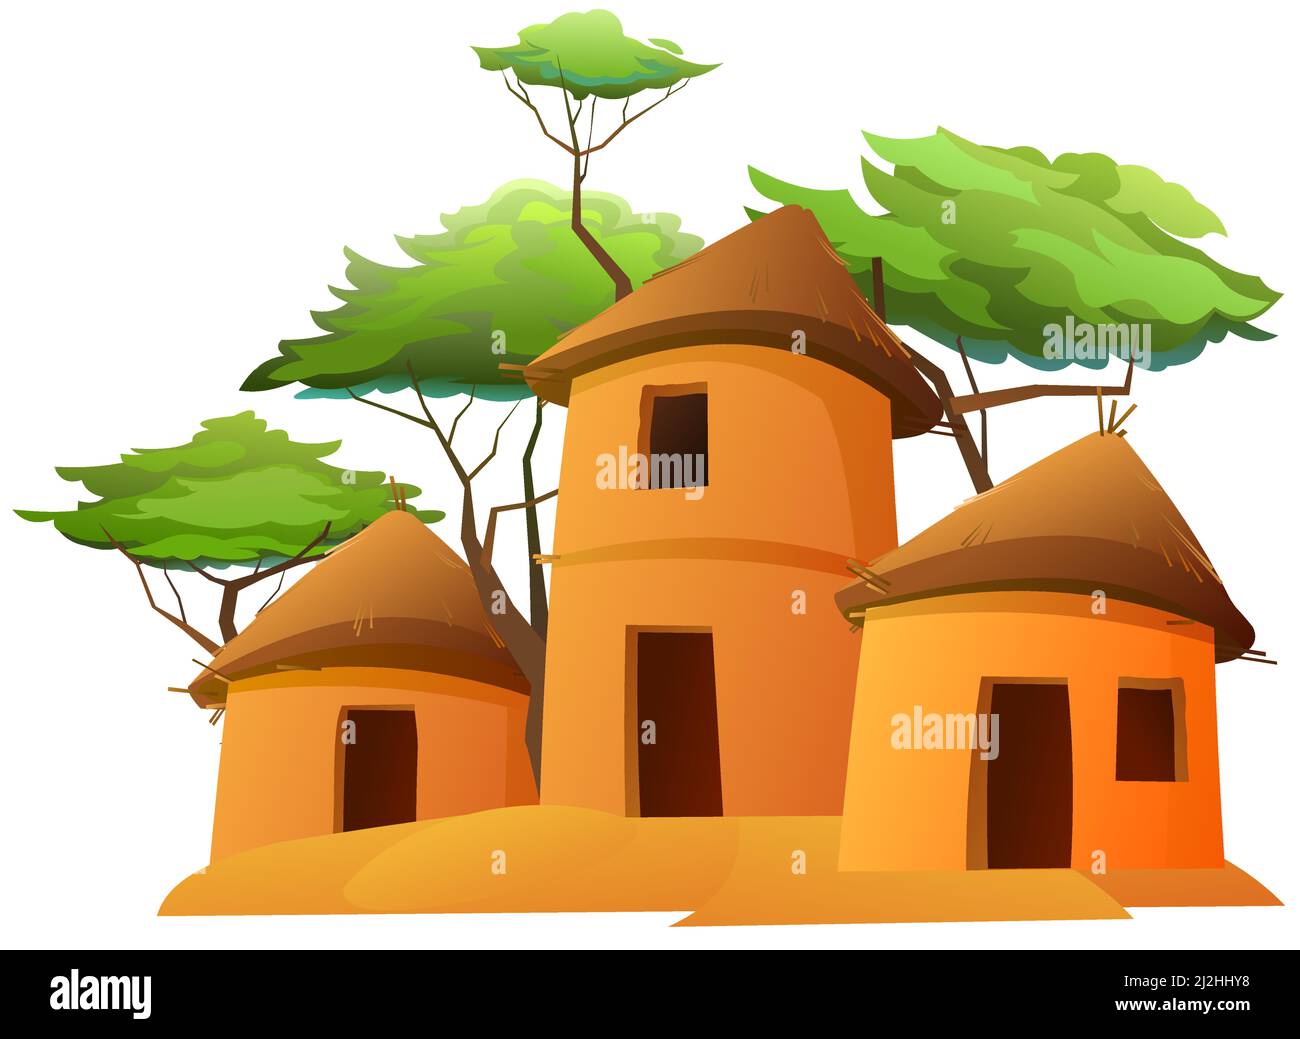 Afrika-Dorf. Ländliche Häuser aus Lehm und Stroh. Afrikanische Landschaft. Runde Gebäude. Akazienbäume. Isoliert auf weißem Hintergrund. Vektor. Stock Vektor